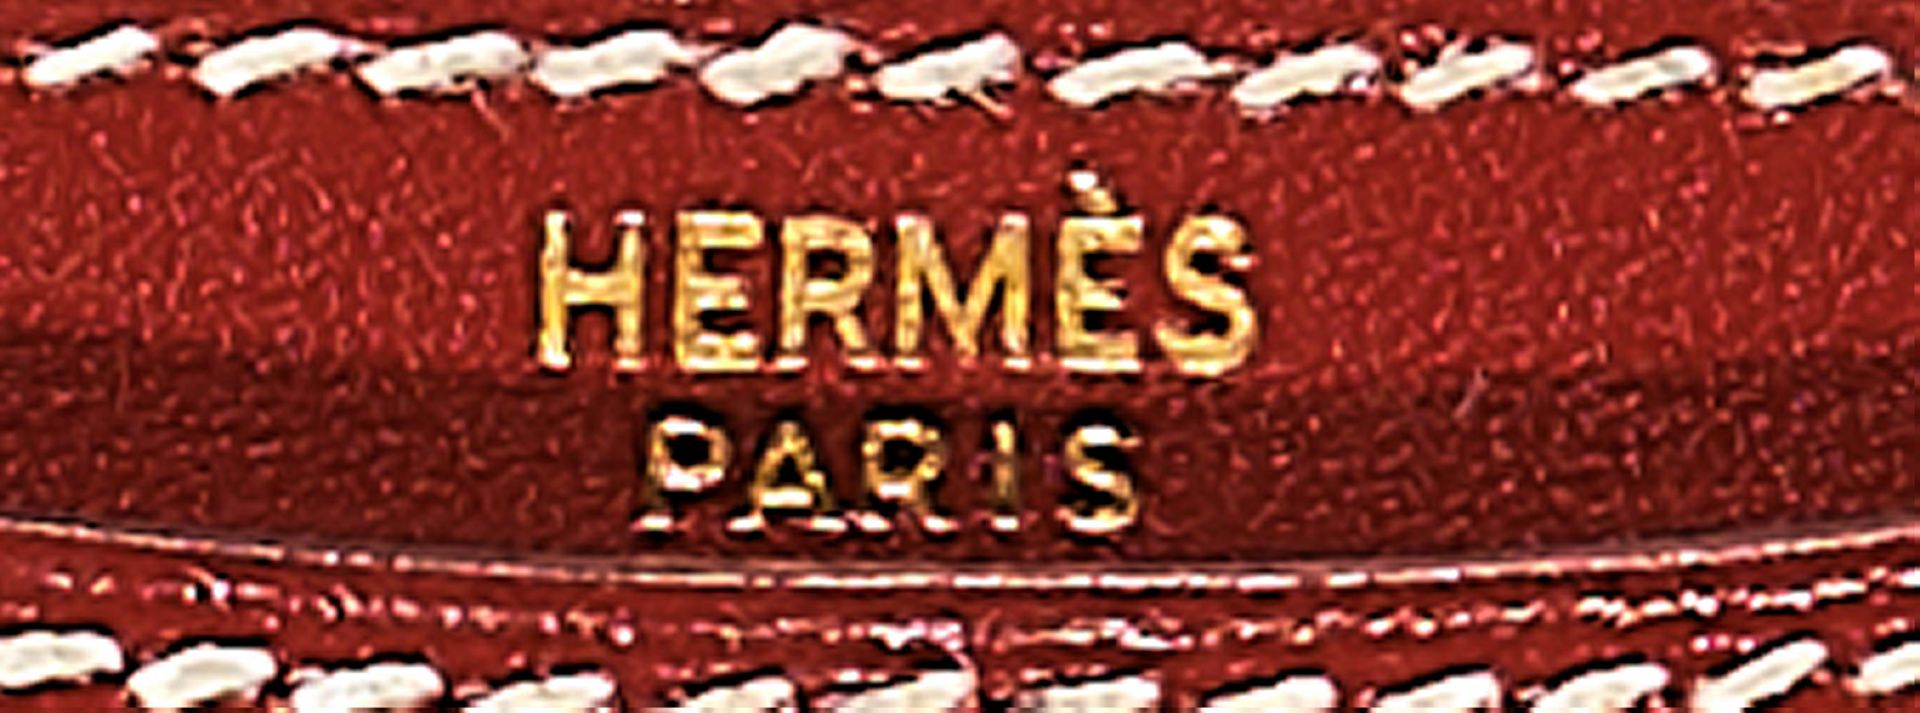 HERMÈS - Bild 2 aus 5